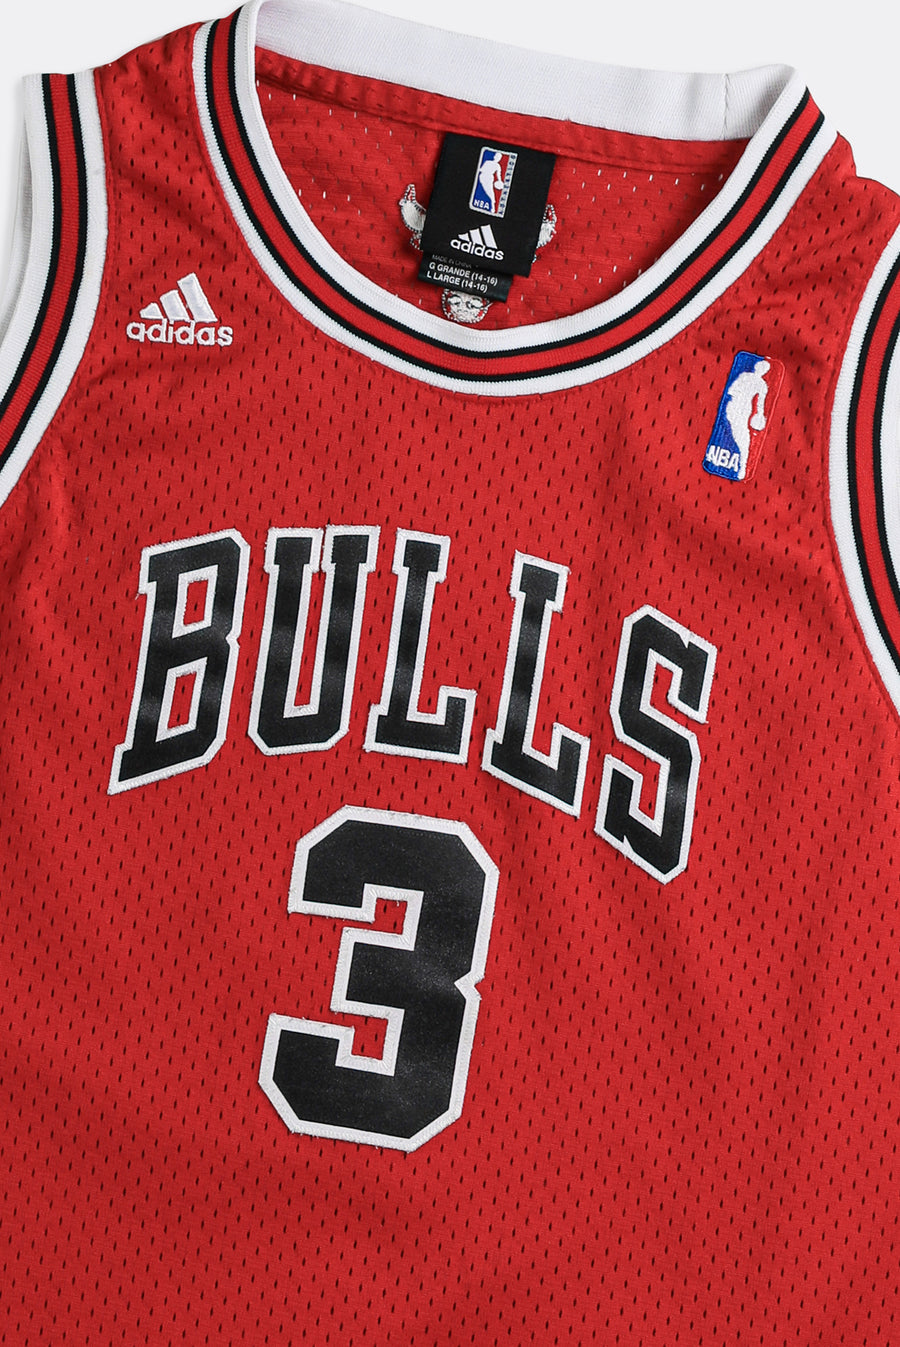 Chicago Bulls Jerseys, Bulls Basketball Jerseys